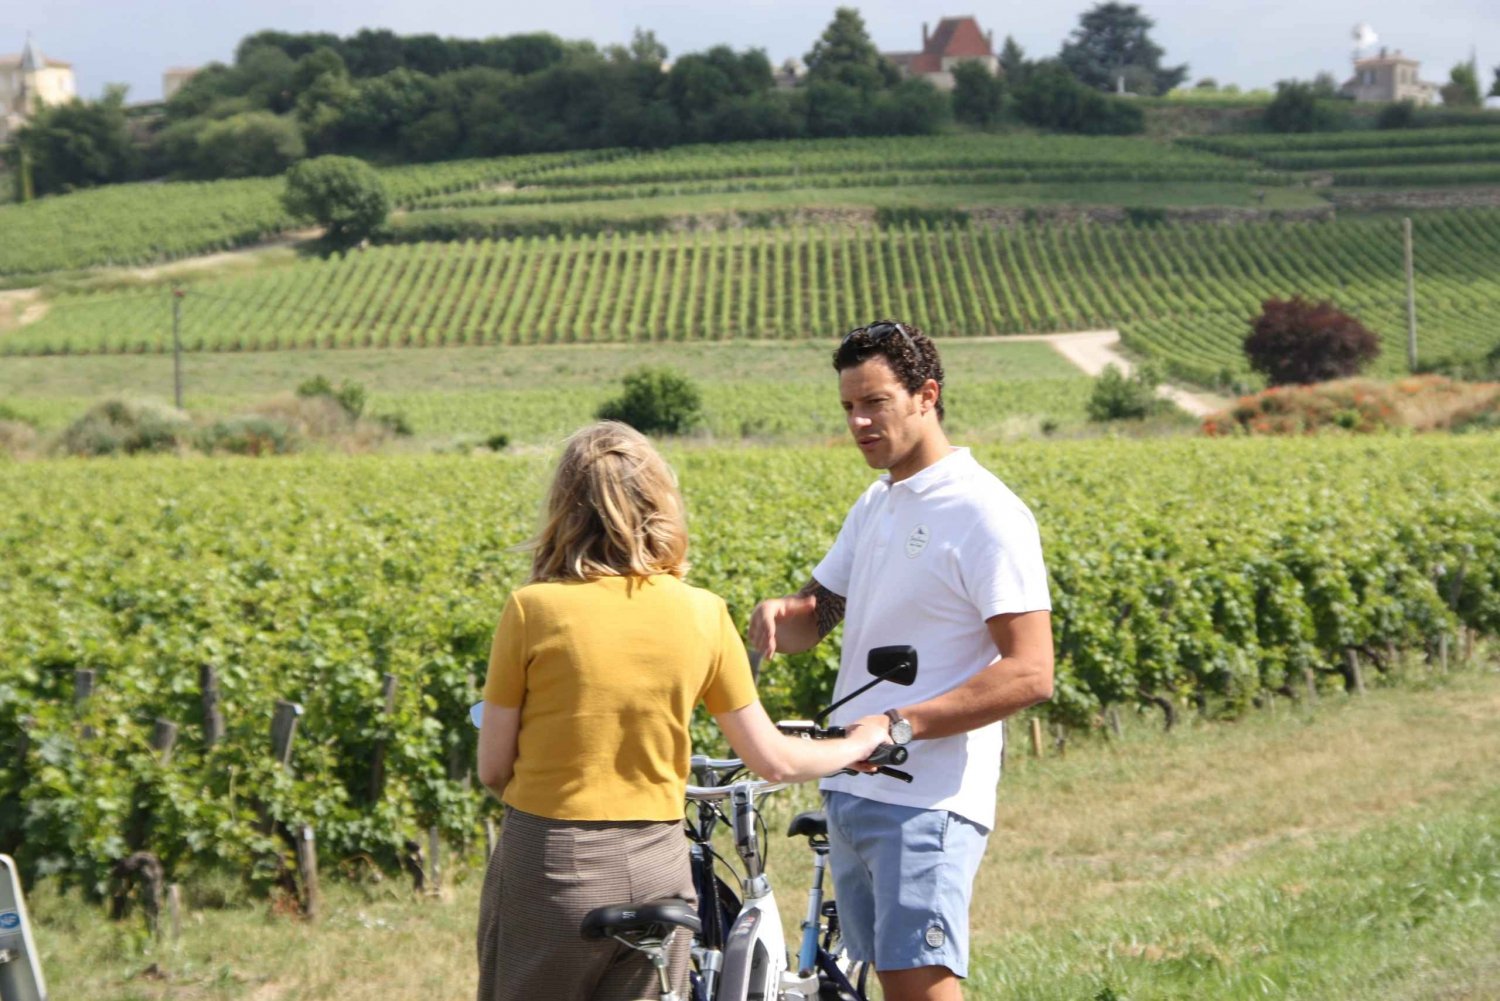 Tour del vino in bicicletta di Saint-Emilion - 2 cantine e pranzo a picnic